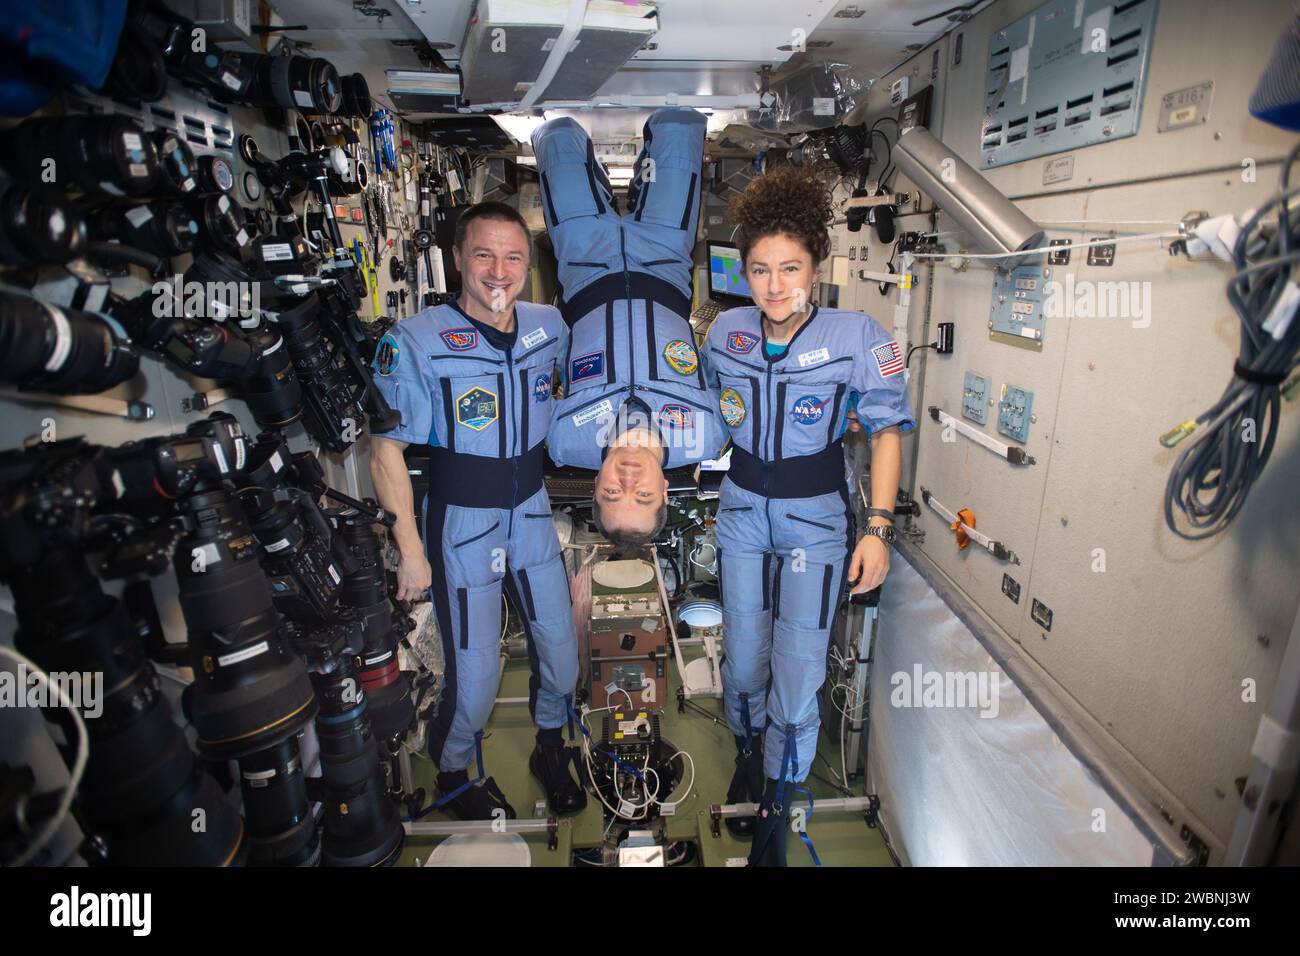 Iss062e116044 (29. März 2020) --- NASA Flight Engineers Andrew Morgan und Jessica Meir Flank Expedition 62 Commander Oleg Skripochka von Roscosmos für ein spielerisches Porträt in der schwerelosen Umgebung der Internationalen Raumstation. Stockfoto